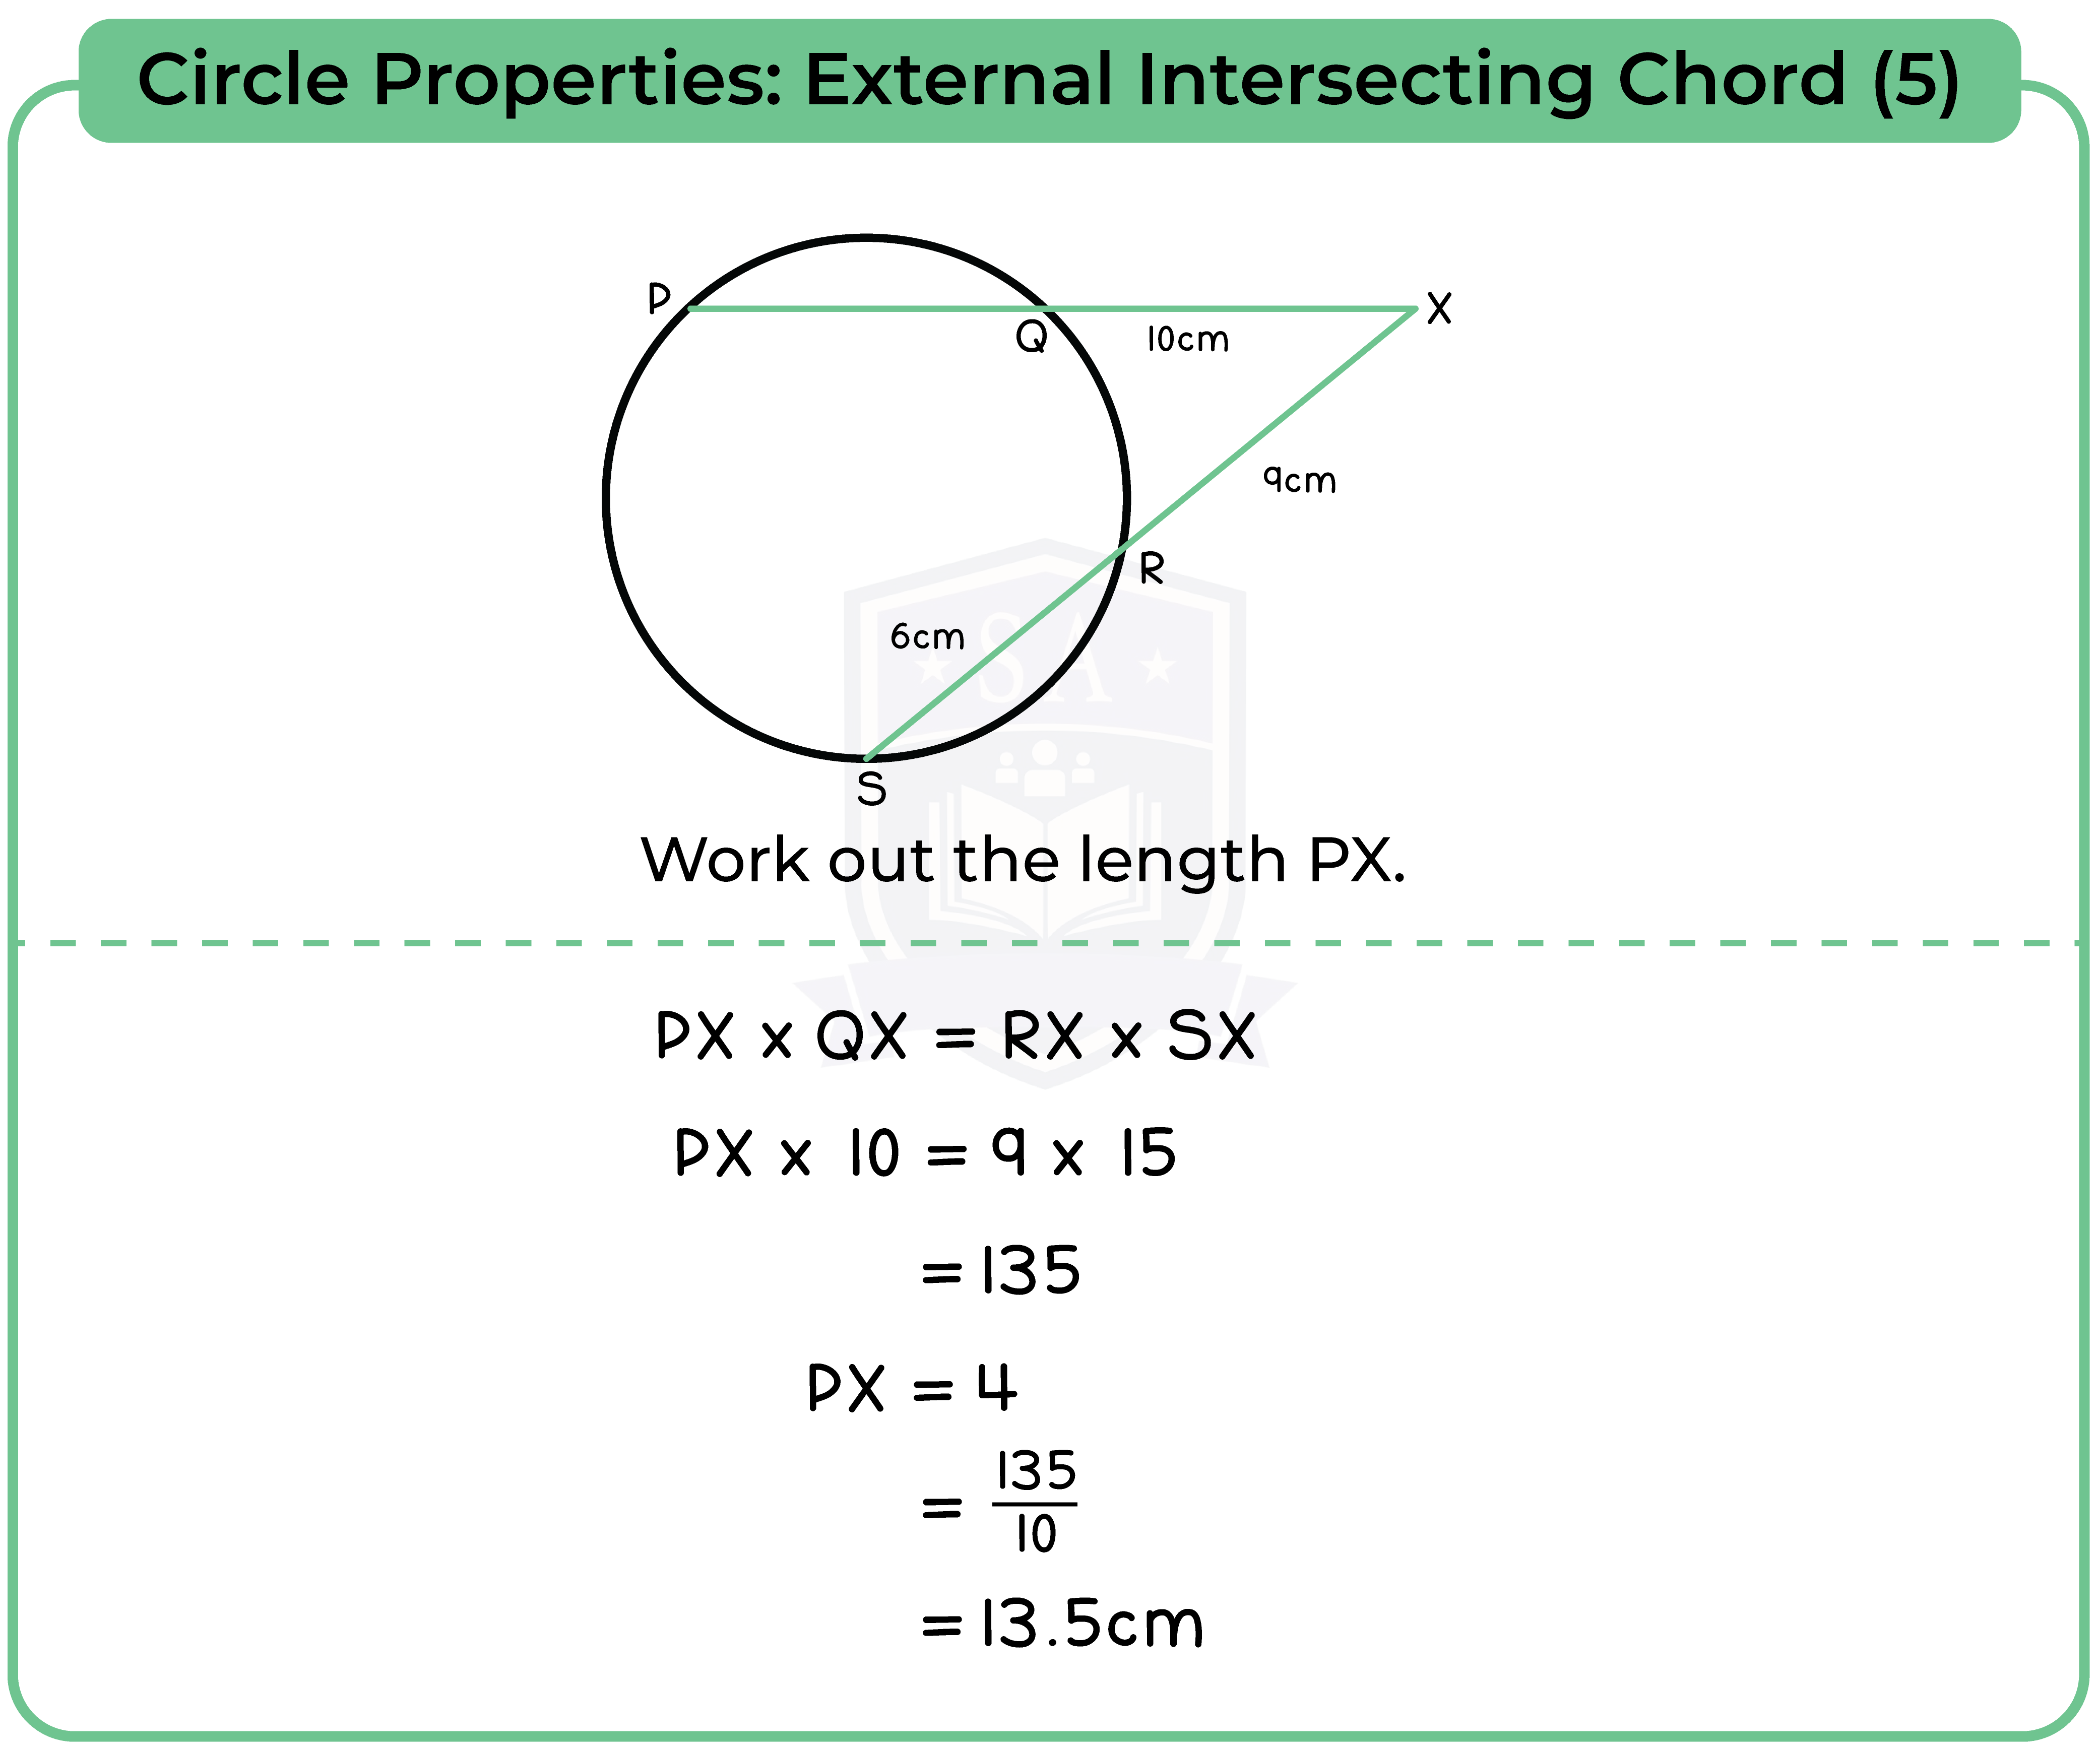 edexcel_igcse_mathematics a_topic 30_circle properties_008_Circle Properties: External Intersecting Chord (5)